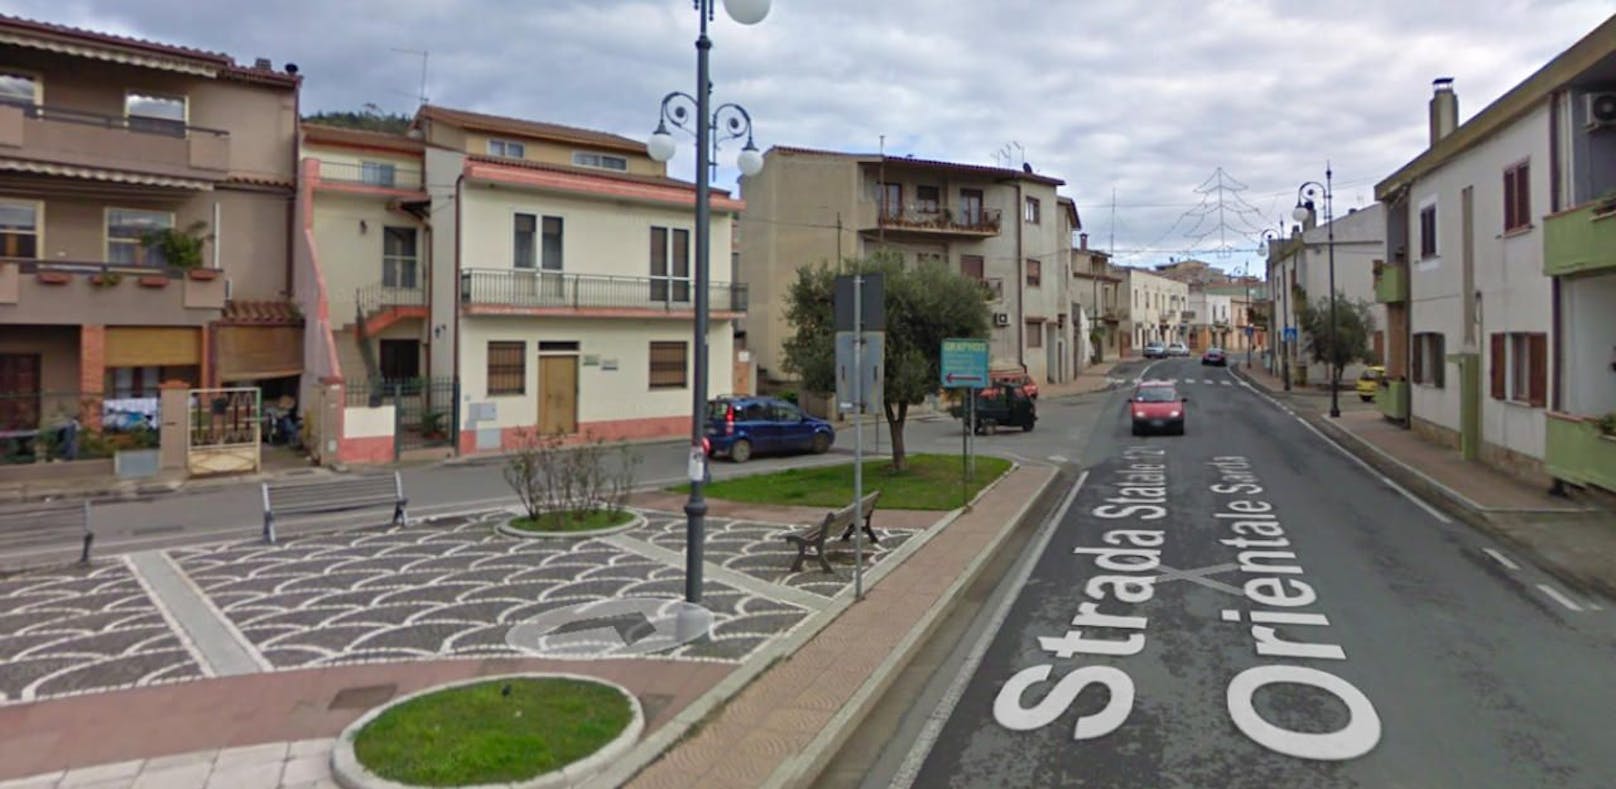 Steirerin am Sozius stirbt bei Unfall auf Sardinien